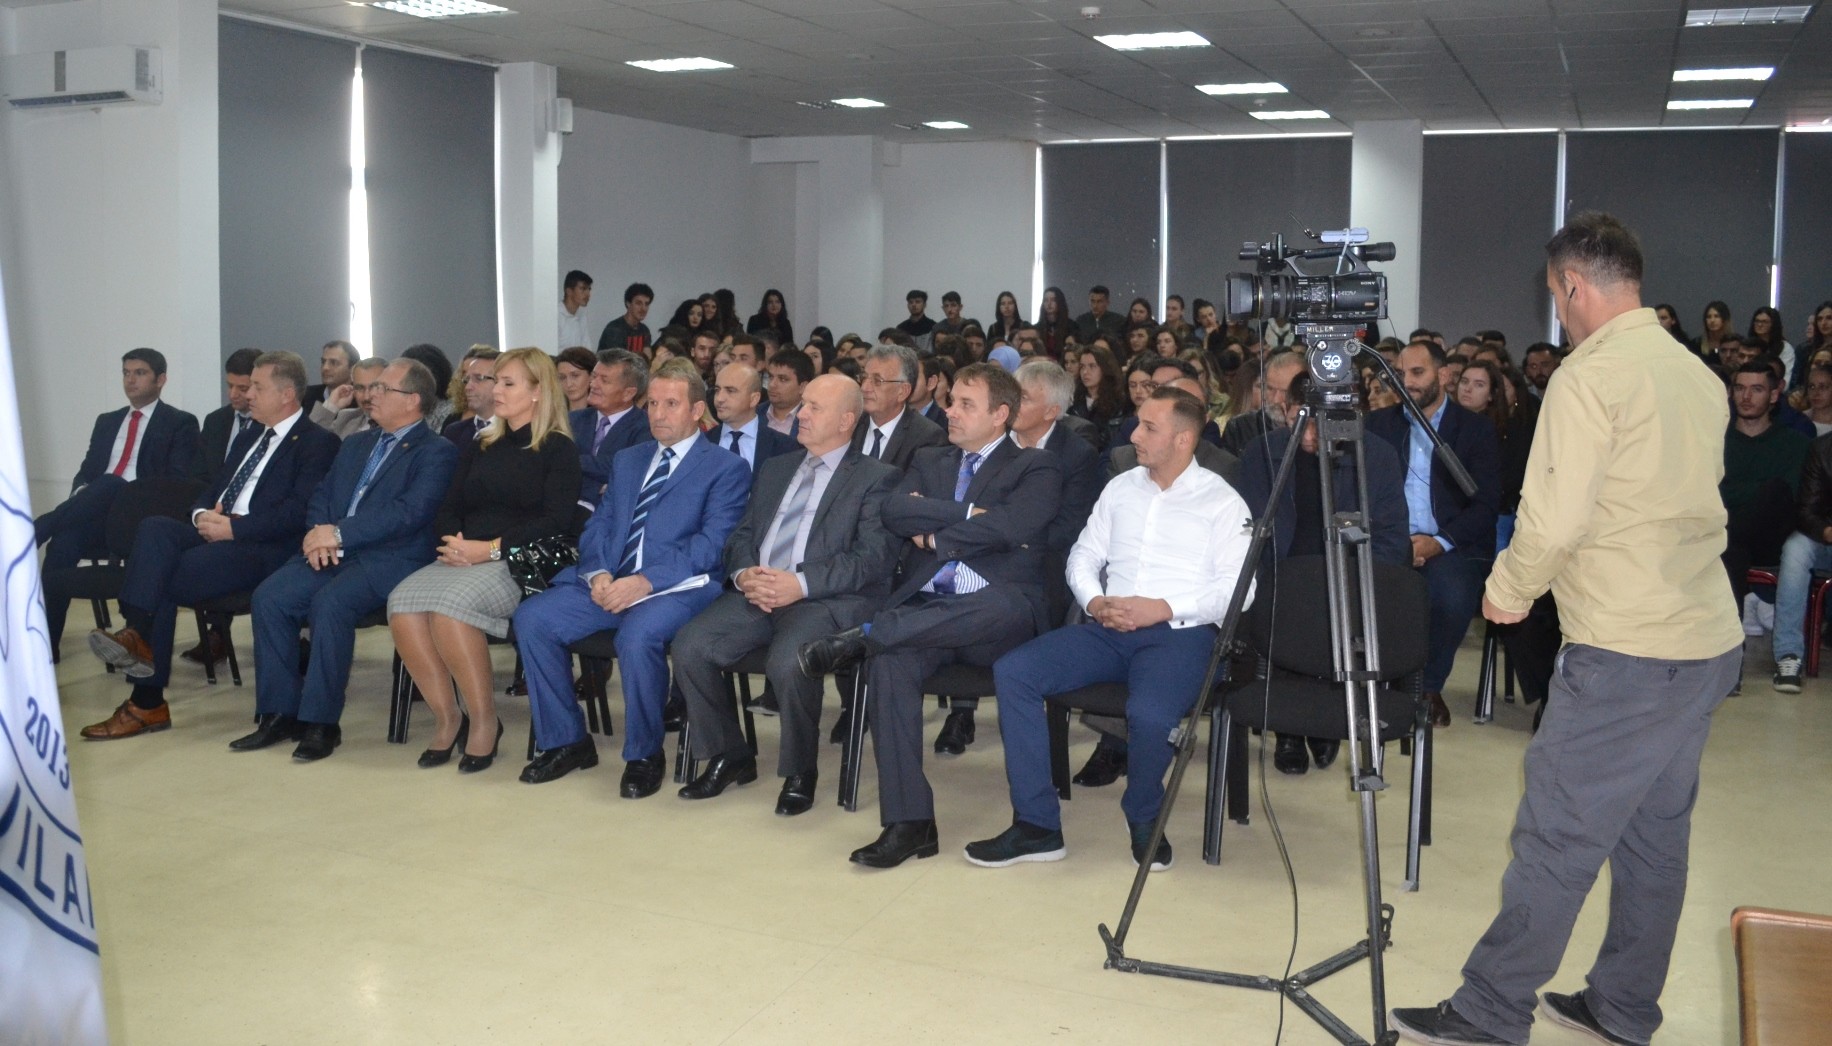 Universiteti i Gjilanit pret me ceremoni studentët e rinj